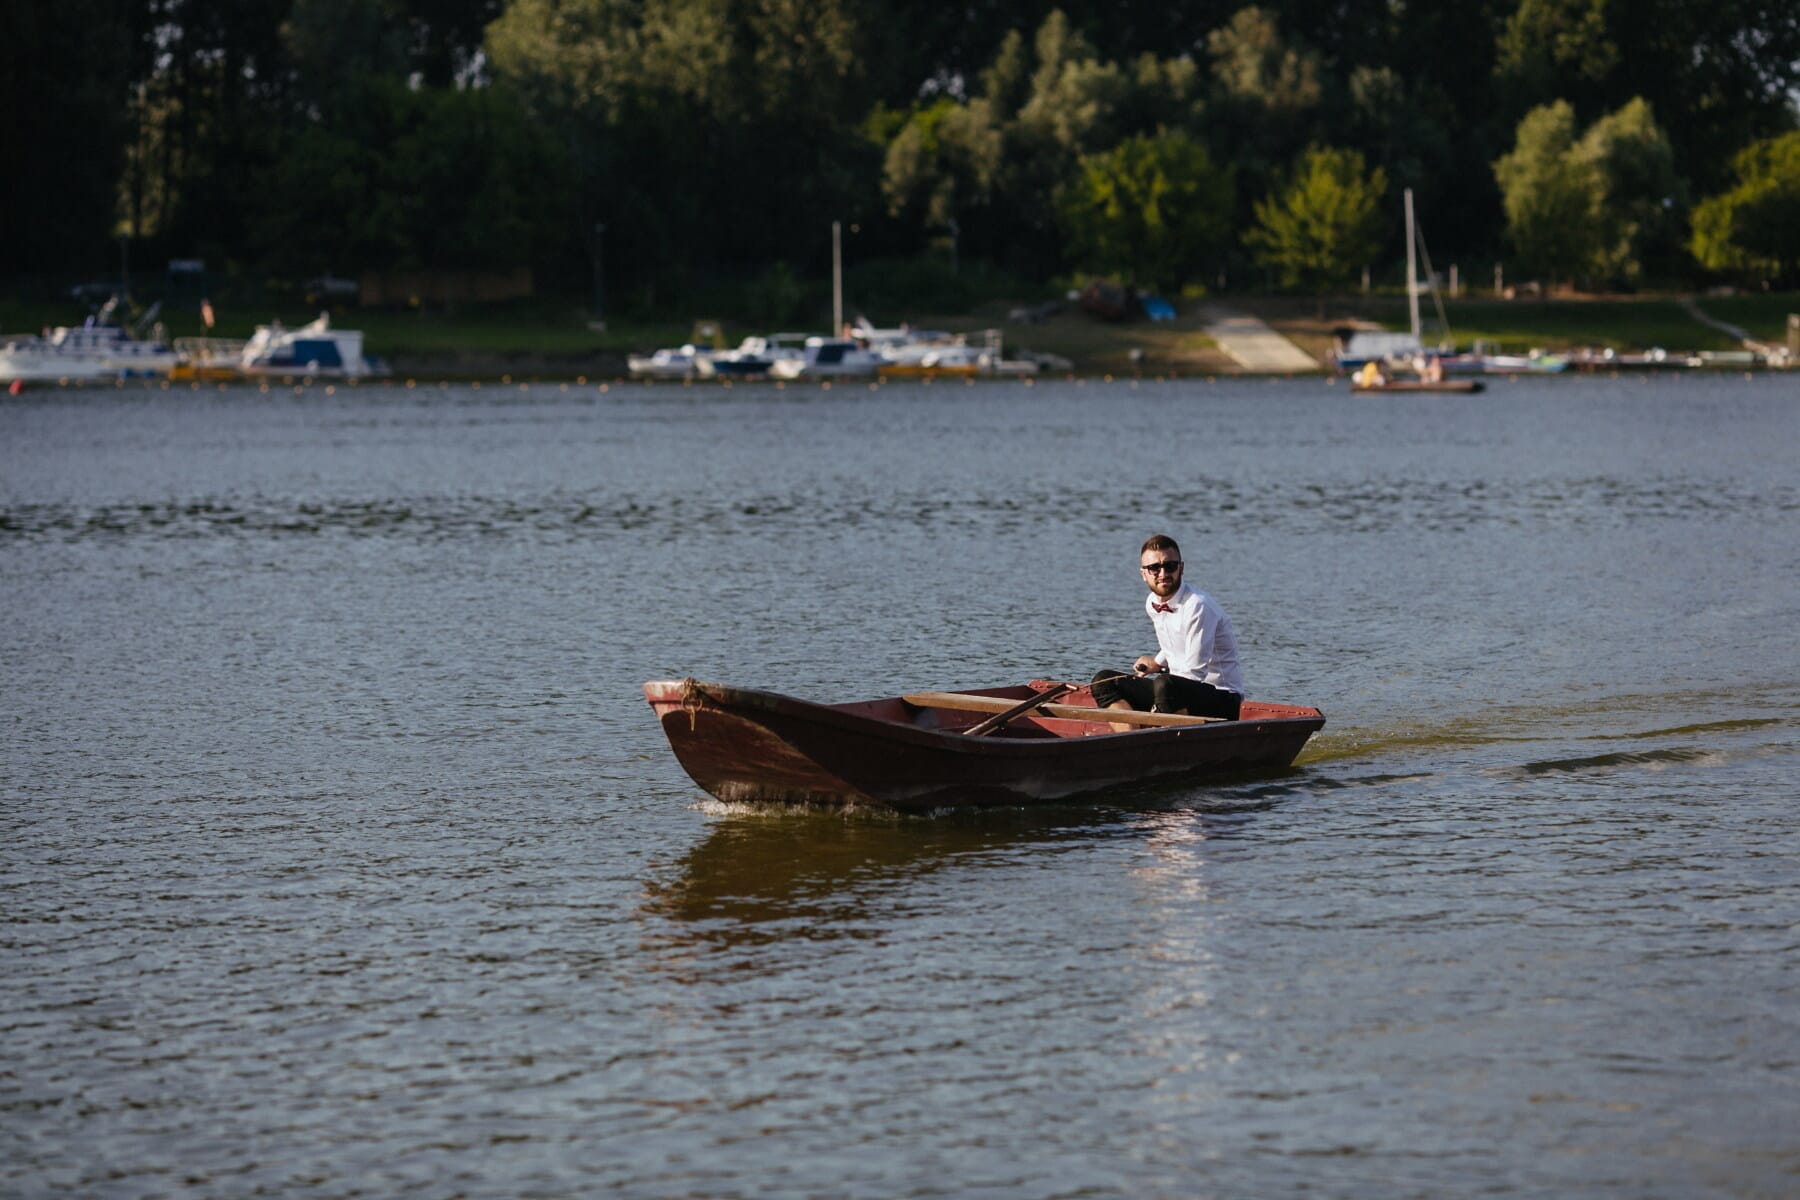 caballero, hombre, corbata de moño, esmoquin, junto al lago, barco, canoa, Kayak, carrera, paleta